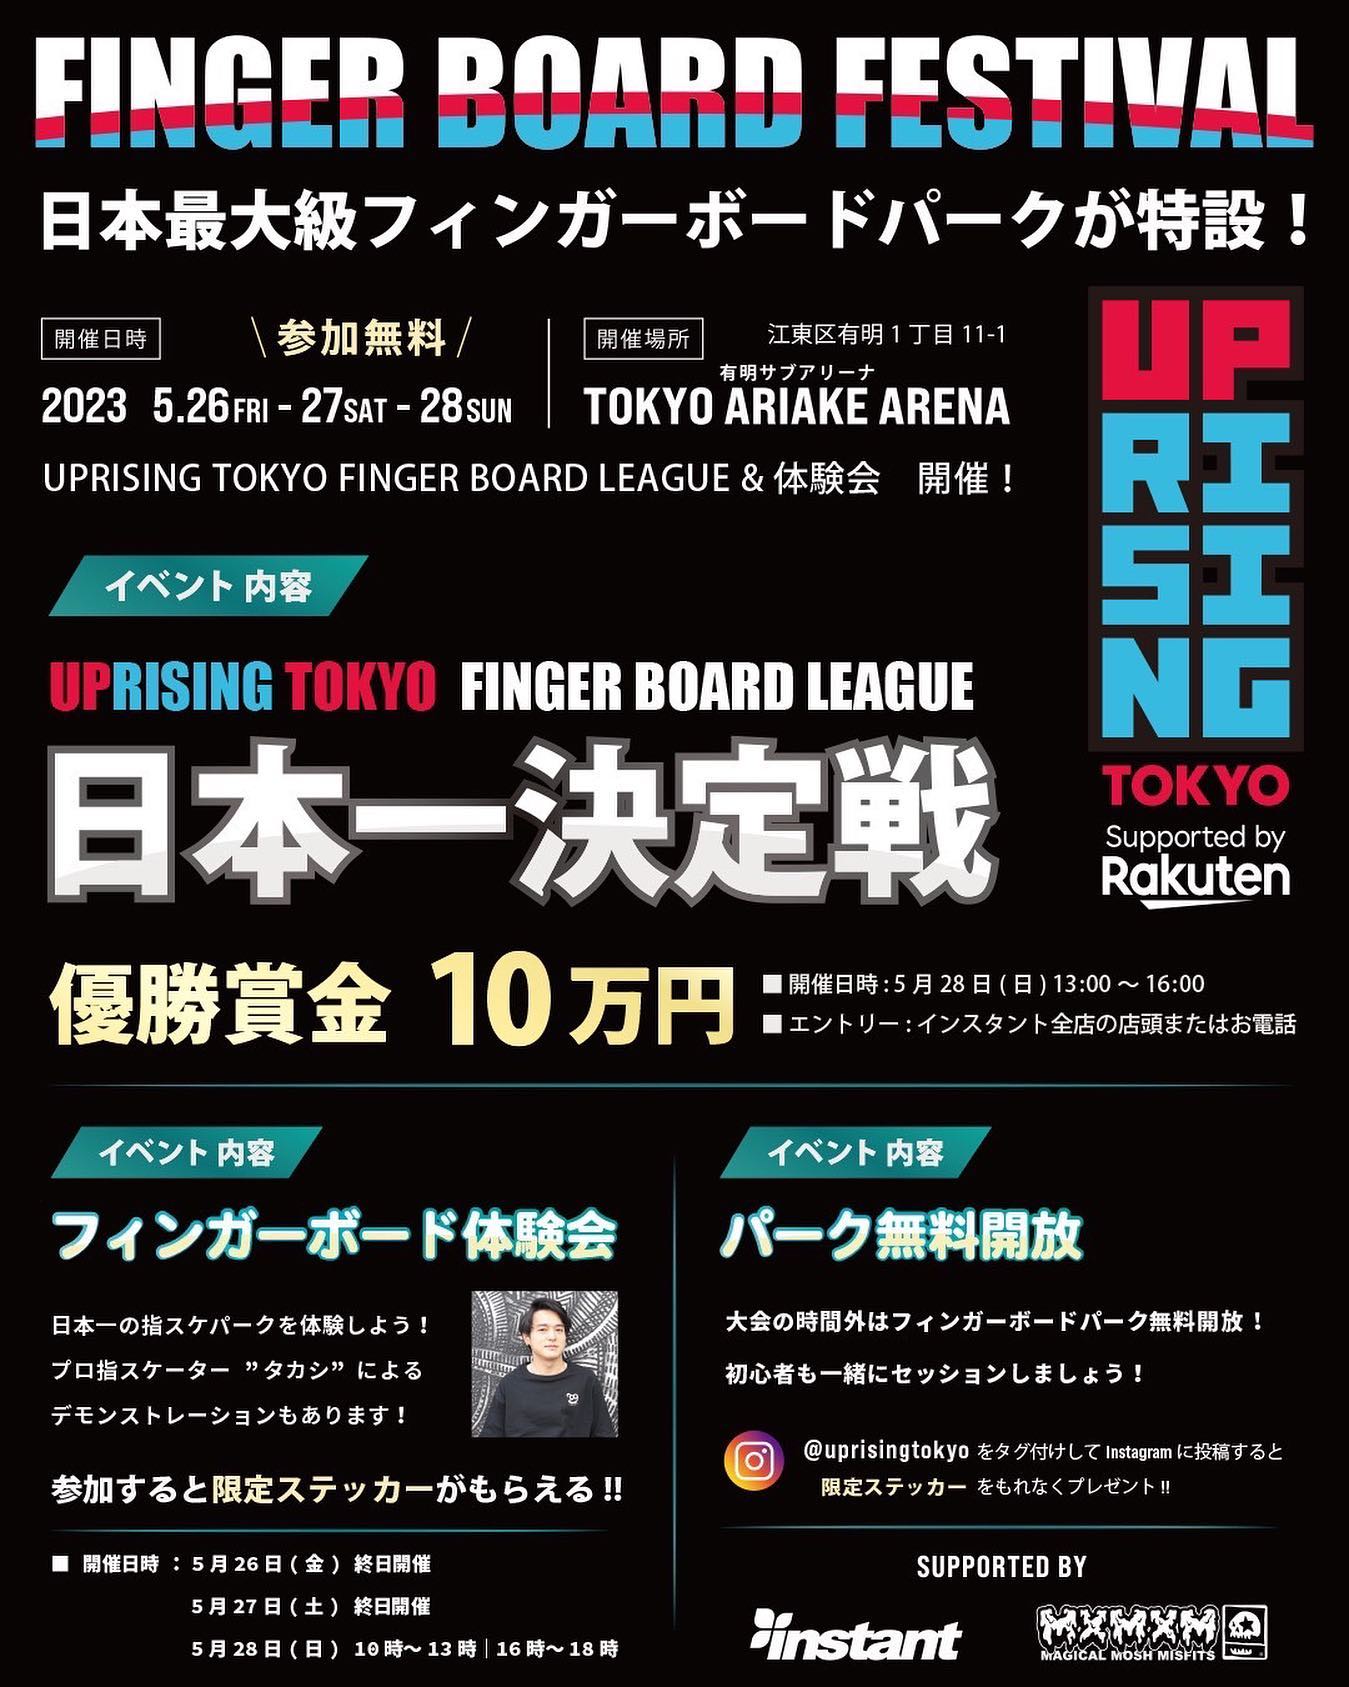 FINGER BOARD FESTIVAL at 有明アリーナ　Presented by @uprisingtokyoスペシャルなフィンガーボードイベントが5月26日(金)～5月28日の3日間開催！！　日本最大級のフィンガーボードパークが特設⛏〈UPRISING TOKYO FINGER BOARD LEAGUE〉優勝賞金10万円フィンガーボード日本一決定戦🏅MCは @jimabien 〈無料体験会〉気軽にできる！フィンガーボードを体験してみよう️🛹プロ指スケーター @takashi_skatebaka によるデモンストレーションもありさらに限定ステッカーももらえるチャンス〈フリーセッション〉大会以外の時間は特設フィンガーボードパークが無料開放会場でしか手に入らない限定フィンガーボードの販売も予定🛹🛹🛹コンテンツ盛り沢山のビッグイベント🛹🛹🛹□開催日時：5月26日(金)～5月28日□参加無料□場所：有明アリーナ (サブアリーナ)【イベント内容】□フィンガーボード日本一決定戦!!!!UPRISING TOKYO FINGER BOARD LEAGUE優勝賞金10万円※限定オリジナルステッカー（非売品）、その他豪華副賞あり□開催日時 5月28日(日) 13時～16時□エントリー方法インスタント全店の店頭またはお電話にて事前エントリーを受け付けております。※当日エントリーも受け付けておりますが、定員になり次第締め切りとさせて頂きます。※エントリーは無料です。※年齢制限はございませんが、コースの高さは85cmになります。□無料体験会□開催日時 5月26日(金) 終日開催、5月27日(土) 終日開催、5月28日(日)10時～13時/16時～18時□受付※ご予約は不要です。※参加は無料です。　※年齢制限はございません。※フィンガーボードのレンタルもございます。※混雑時は時間制限を設けさせて頂きます。□フリーセッション大会の時間外はフィンガーボードパークが無料開放!!!! 初心者もウェルカム!!@uprisingtokyoをタグ付けしてInstagramに投稿すると、限定ステッカーをもれなくプレゼント!!□お問い合わせ先インスタント浦安ストアTEL 047-381-0968